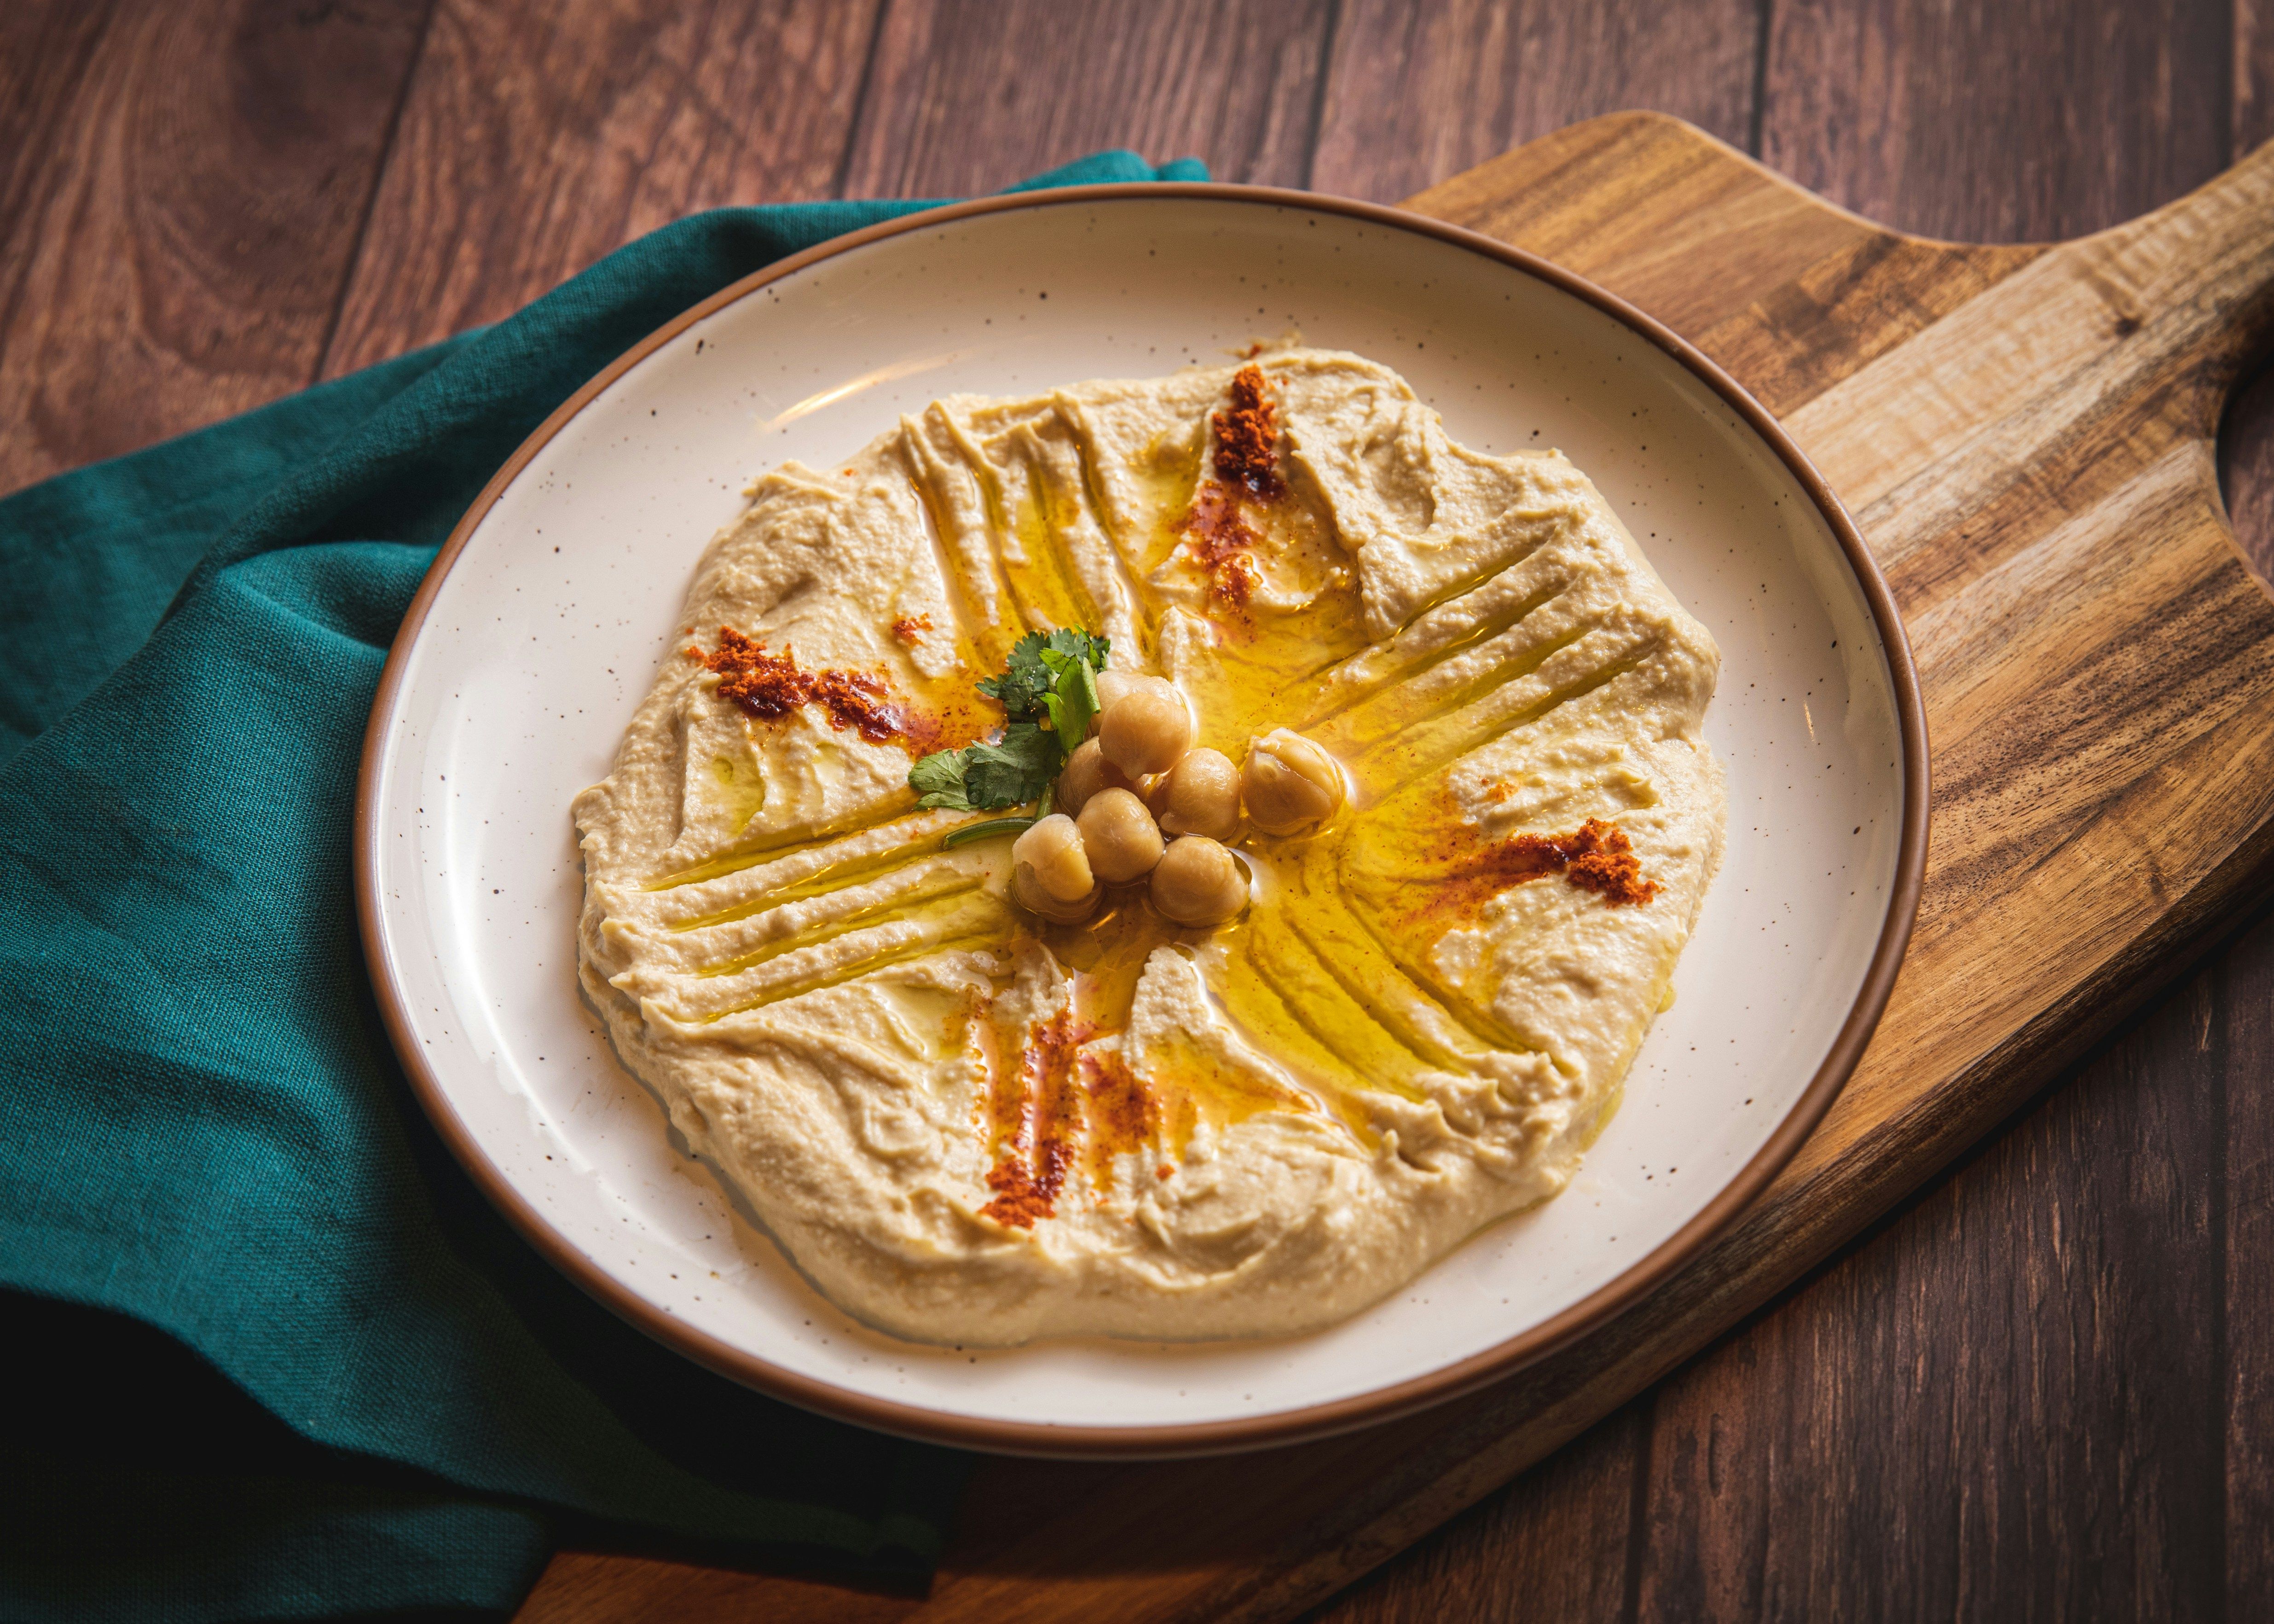 Хумус - готовим вкусную намазку на хлеб - простой и быстрый рецепт  - Новости Вкусно